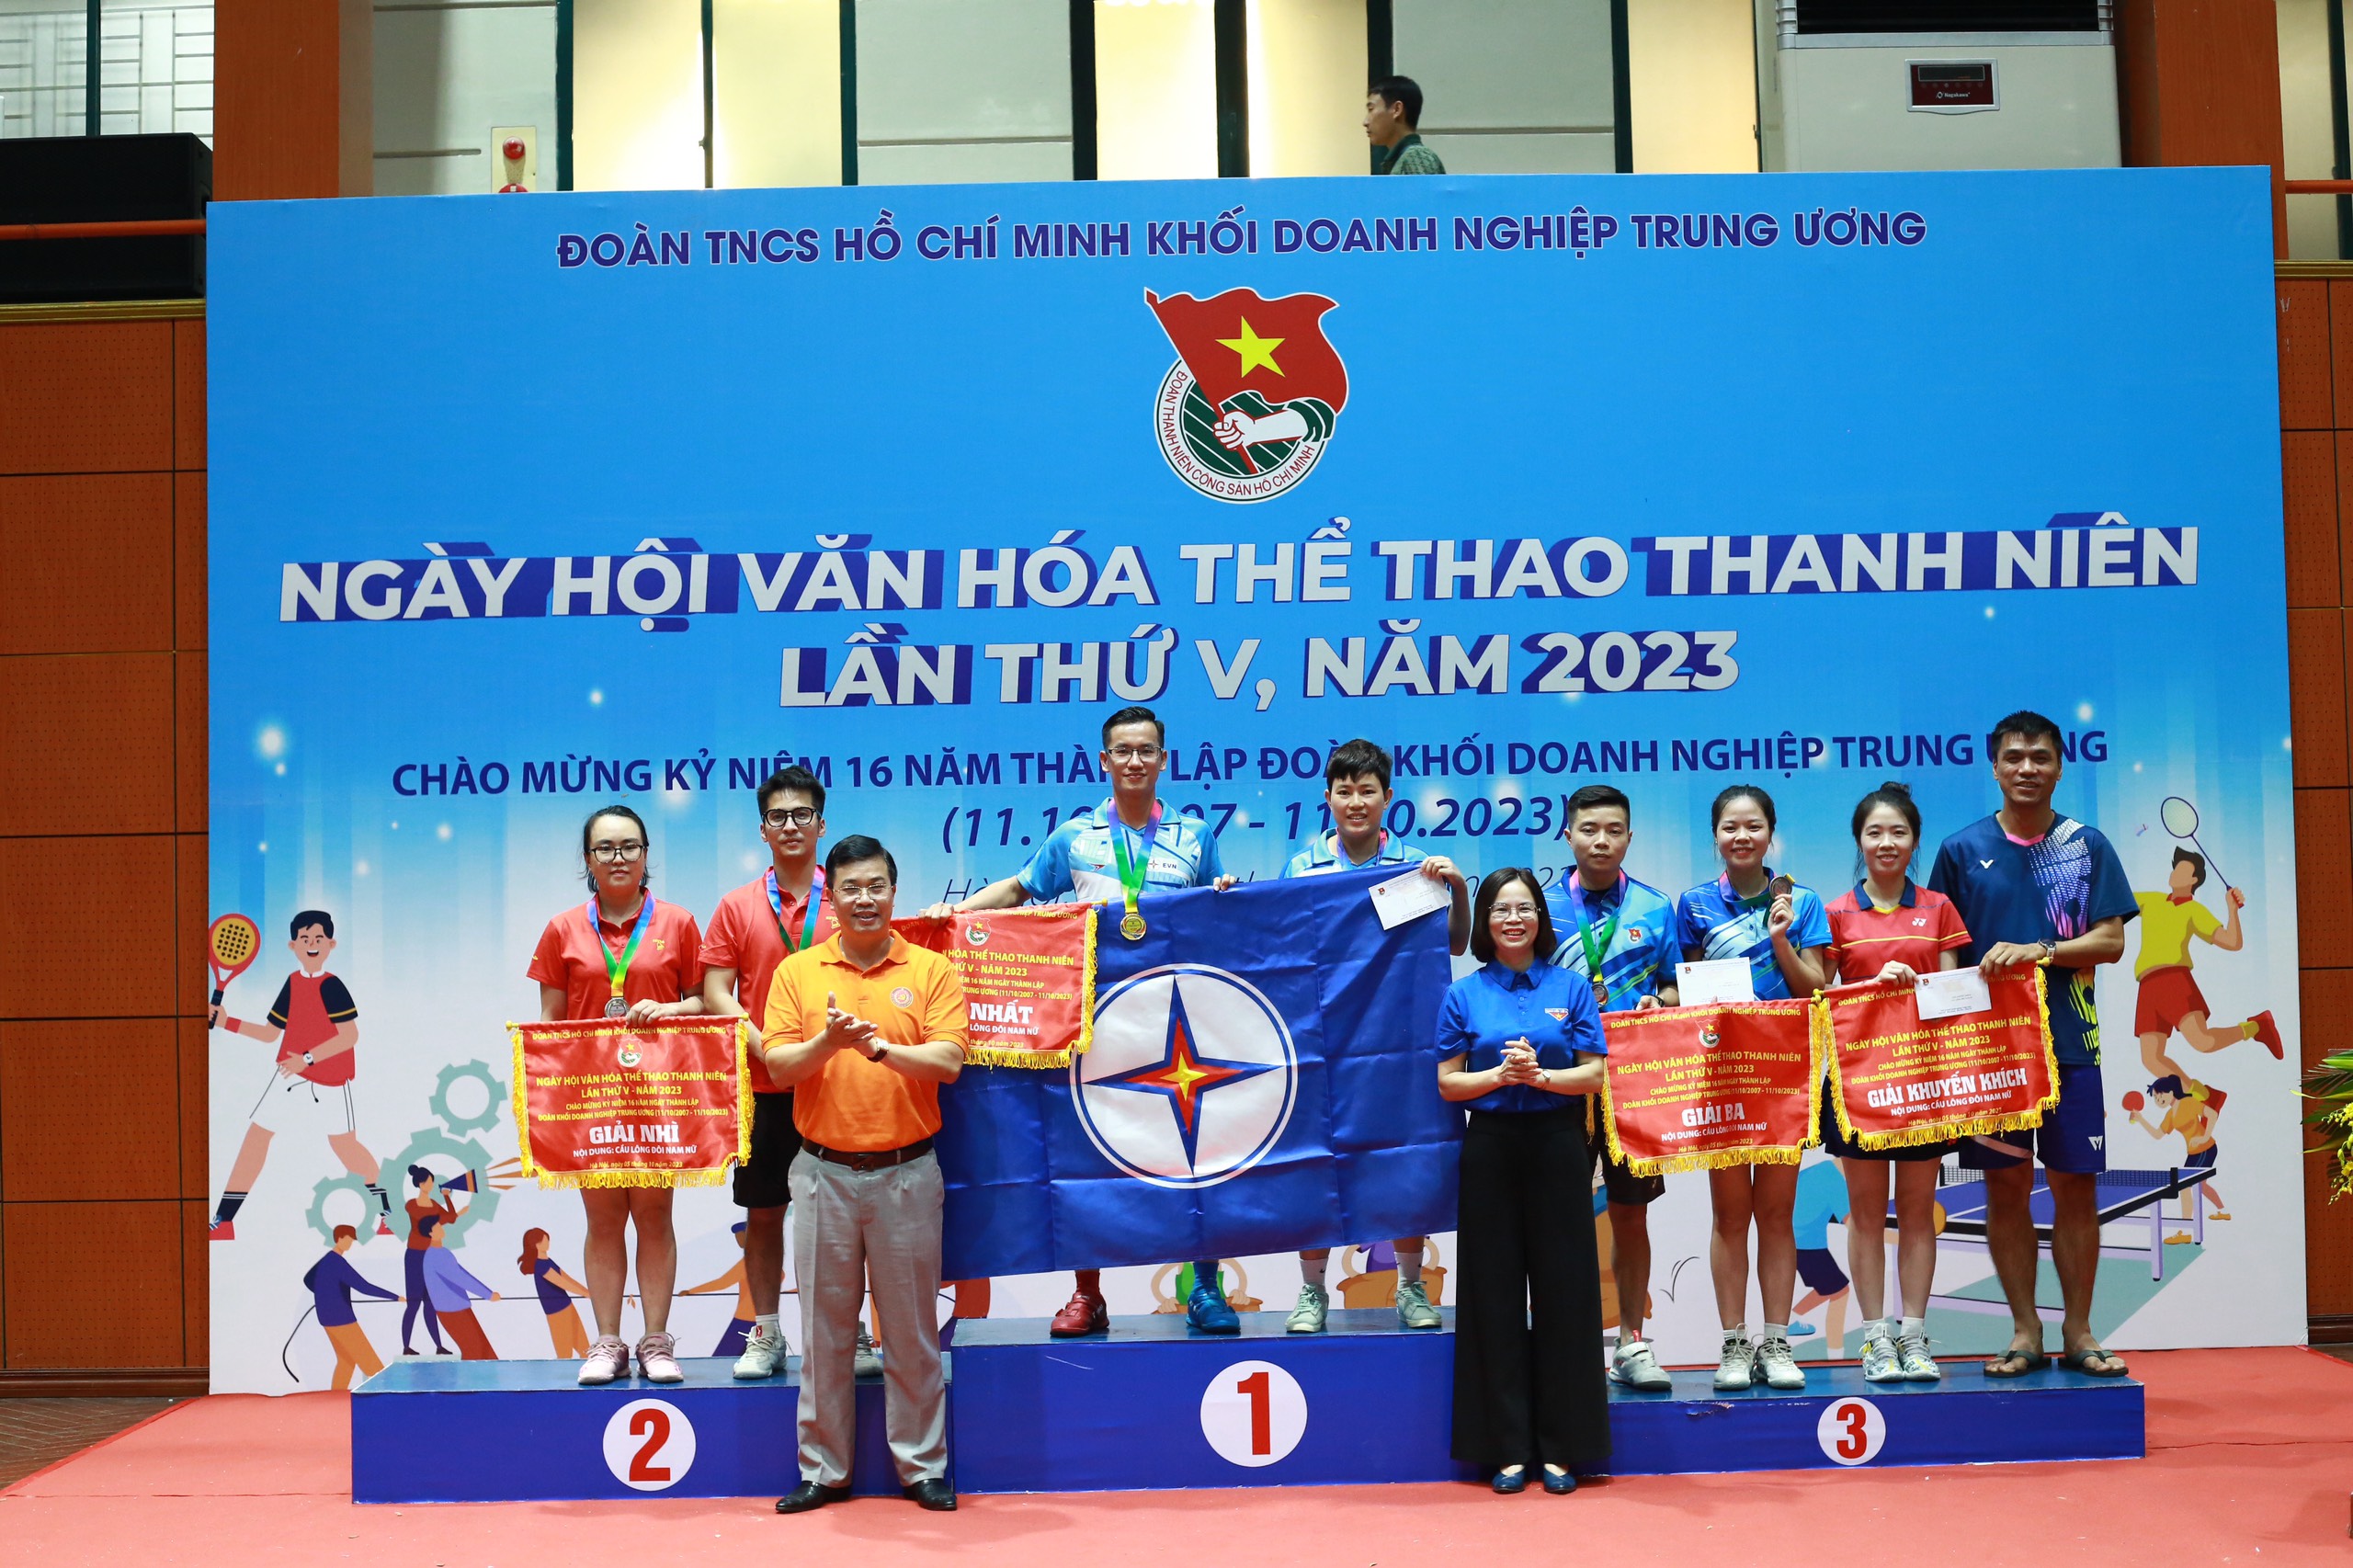 Đồng chí Nguyễn Trung Hiếu, Trưởng Ban Tuyên giáo Đảng ủy Khối và đồng chí Hoàng Thị Minh Thu, Bí thư Đoàn Khối trao giải môn Cầu lông nam nữ cho các đội đoạt giải.